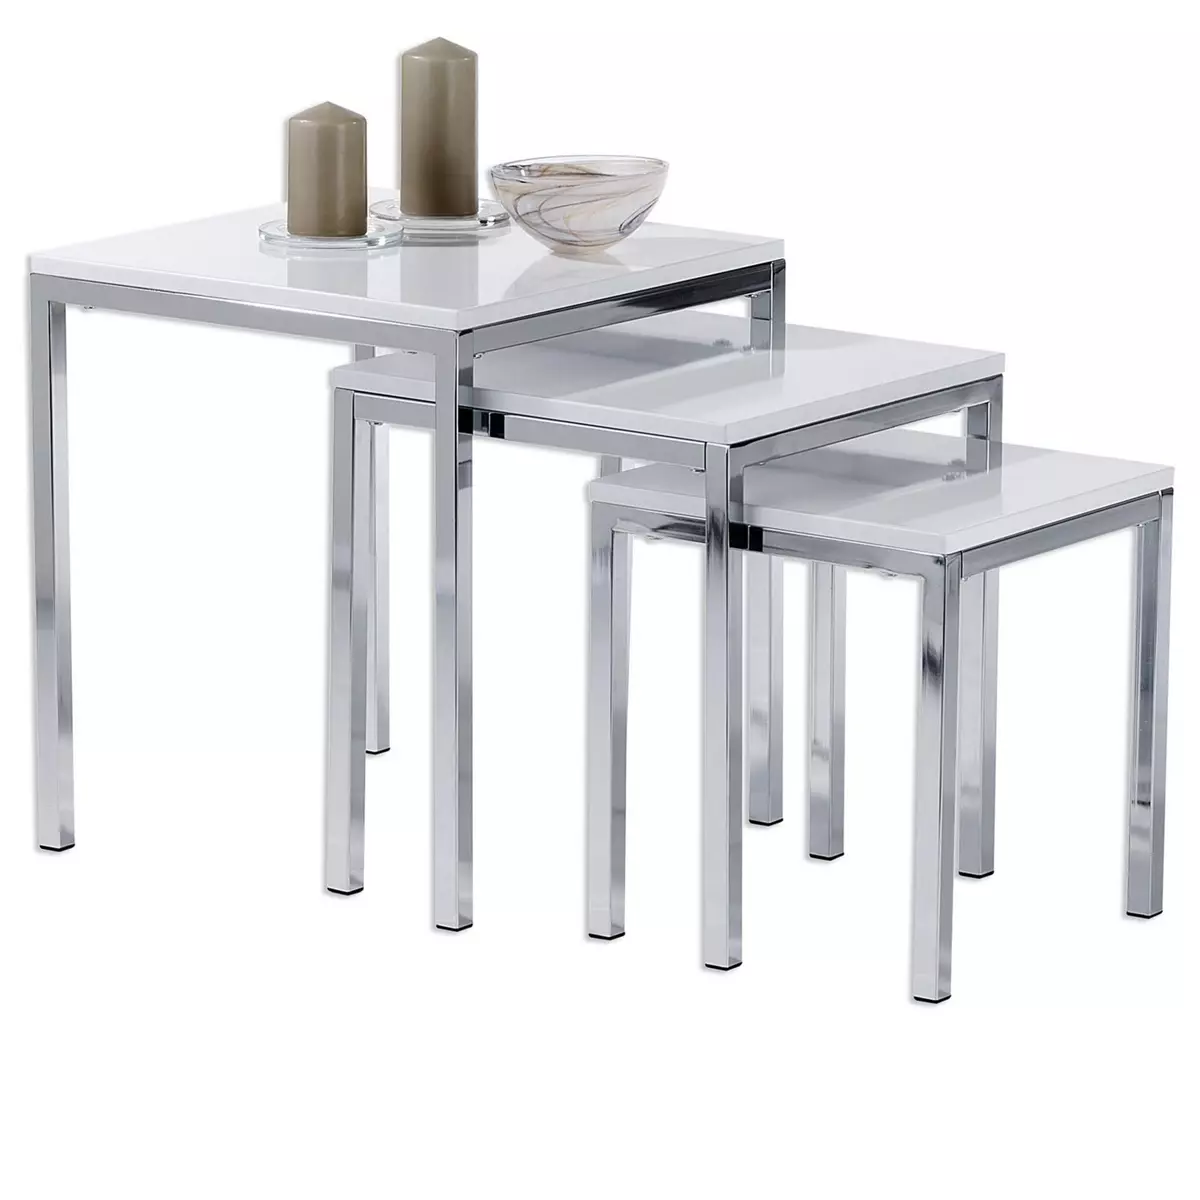 IDIMEX Lot de 3 tables d'appoint LUNA tables basses de salon gigognes bouts de canapé plateau carré blanc brillant et cadre en métal chromé